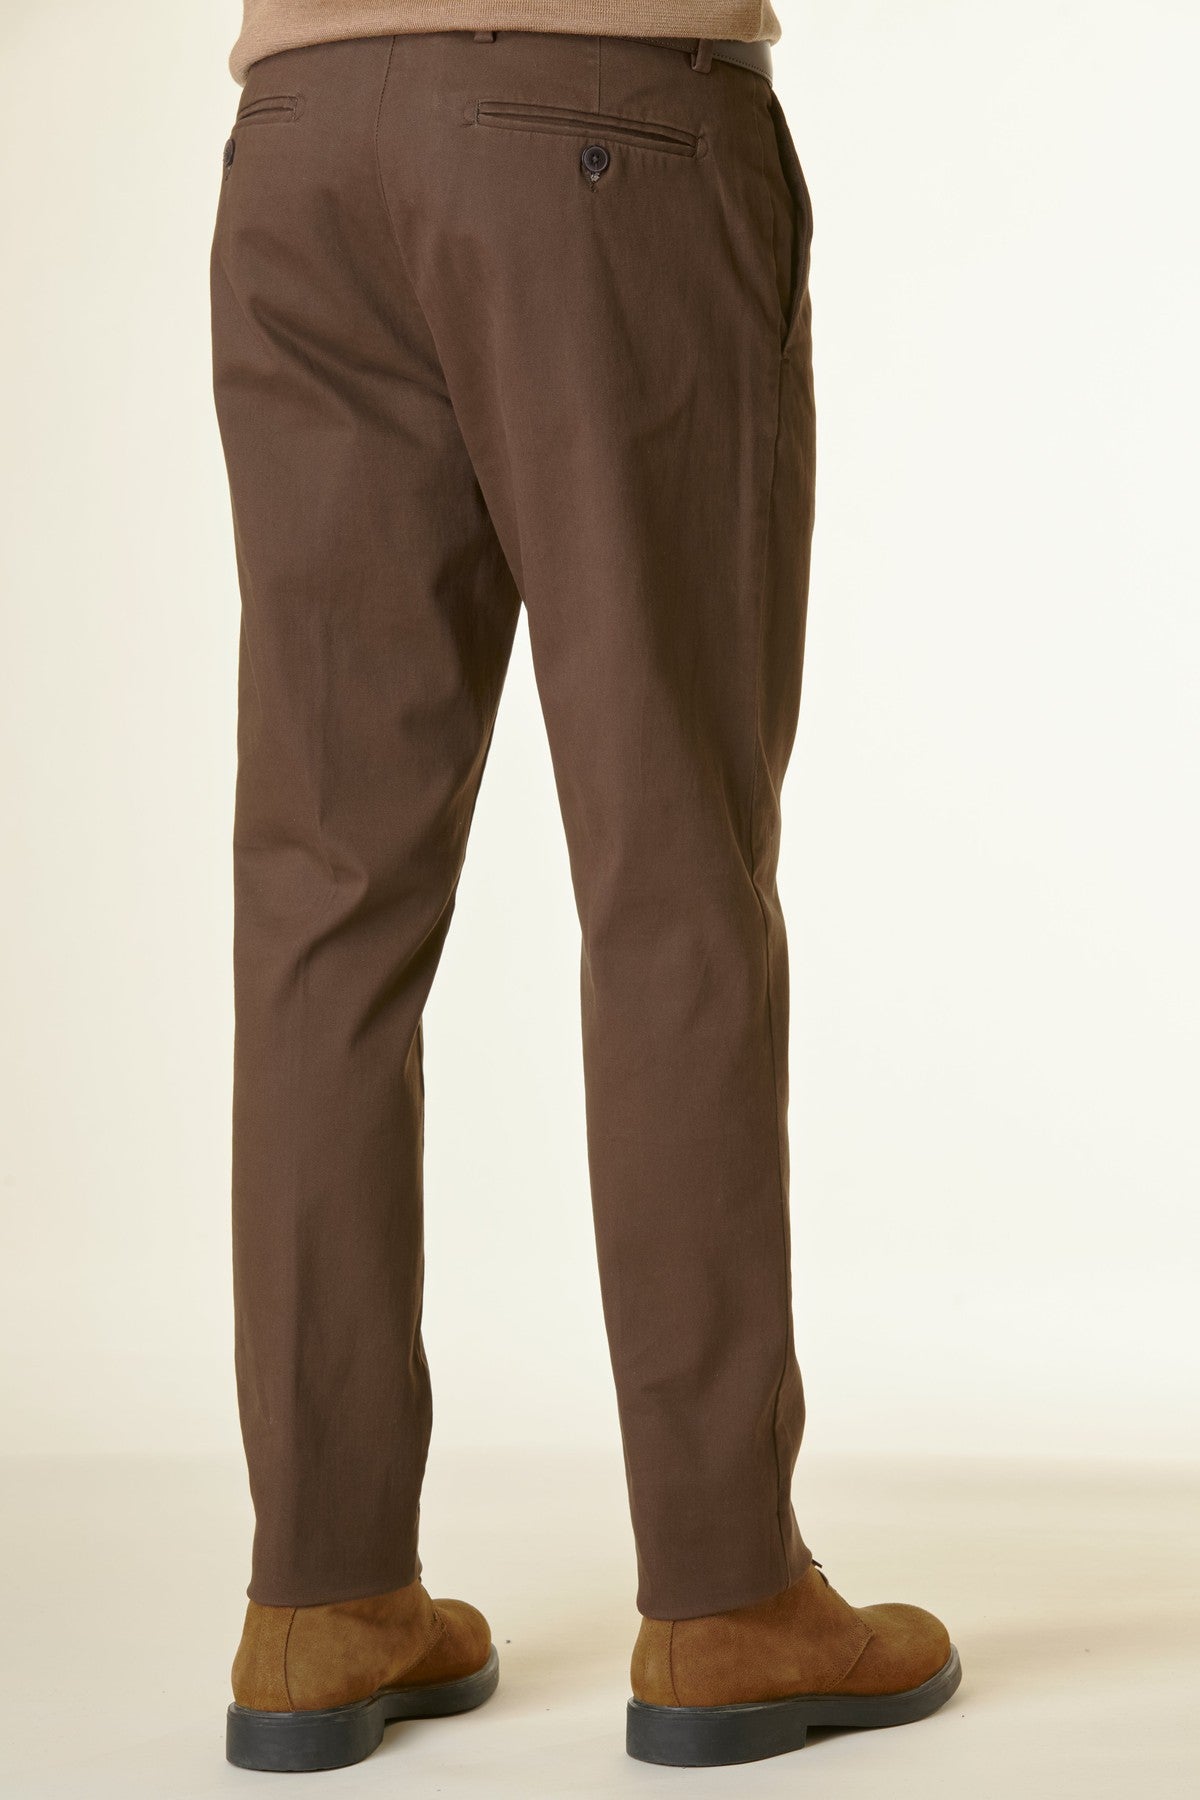 Angelico - Pantalone marrone twill cotone - 3